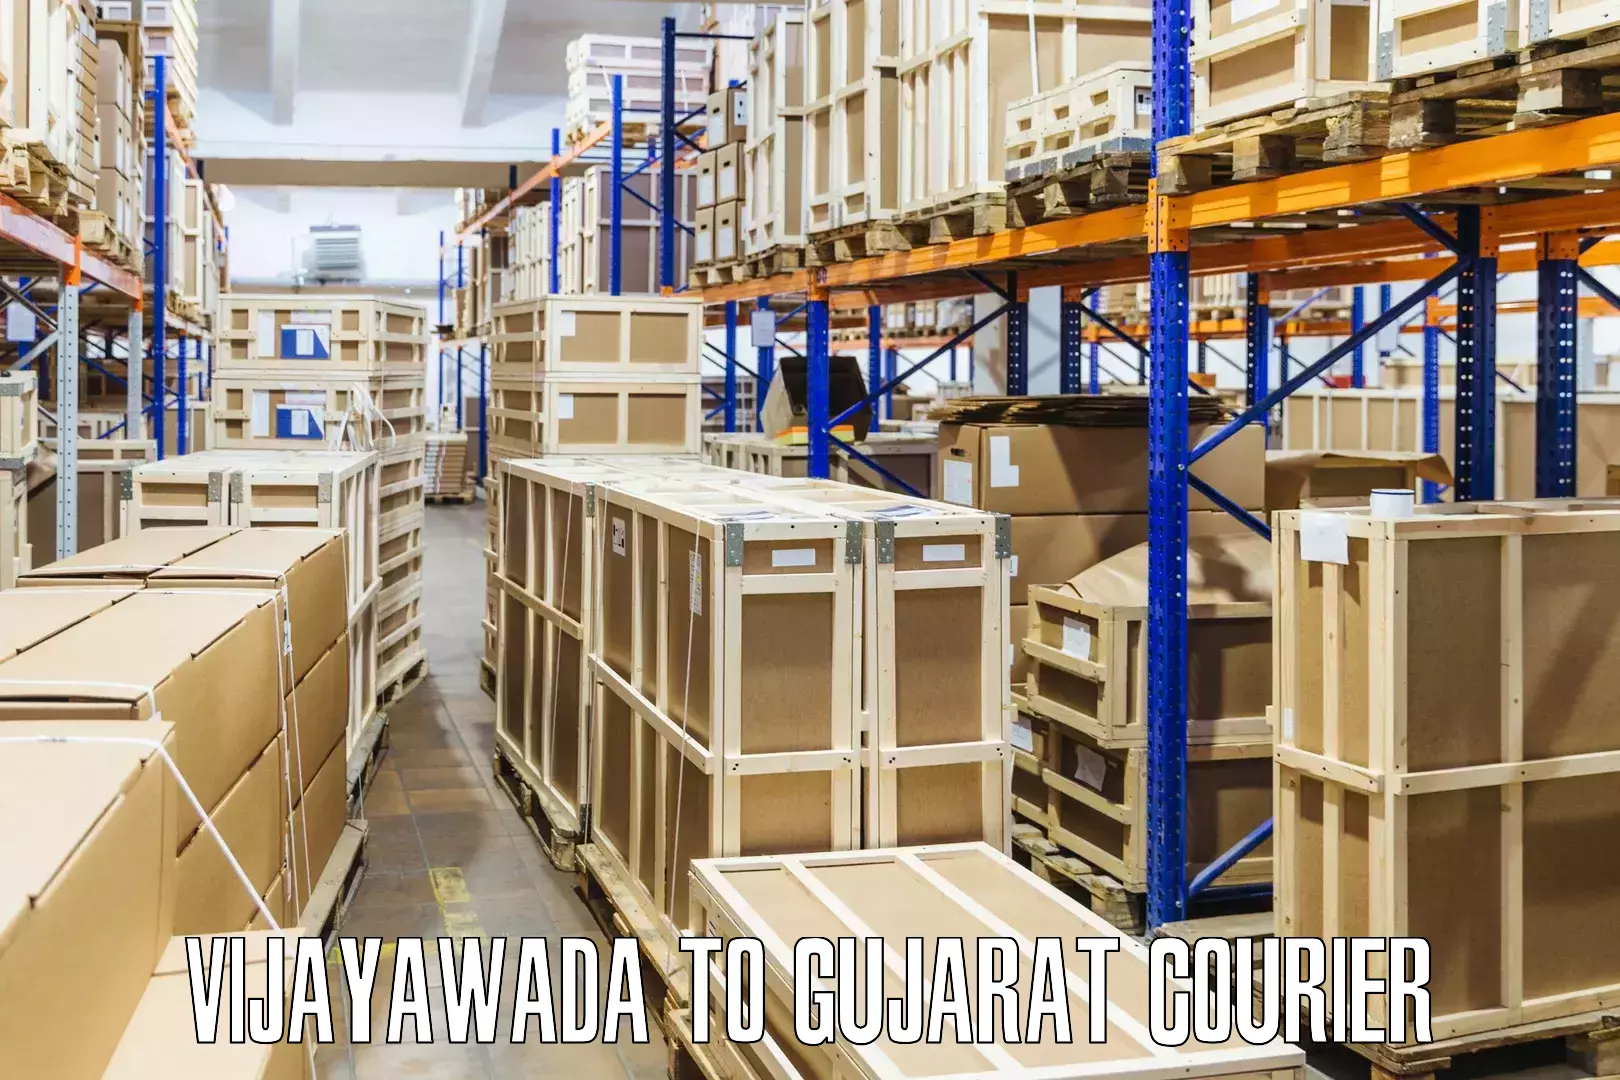 Courier service partnerships in Vijayawada to Vyara